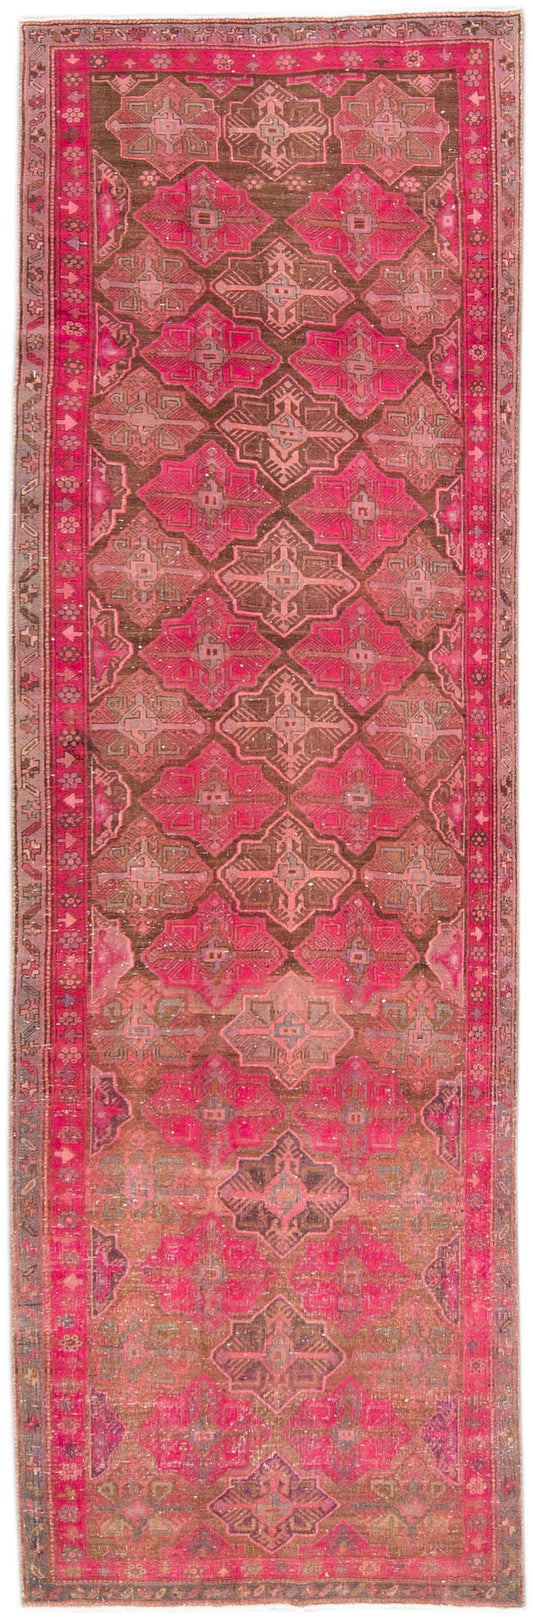 Vintage Persian Handmade Wool Runner - 4'4'' x 13'6''